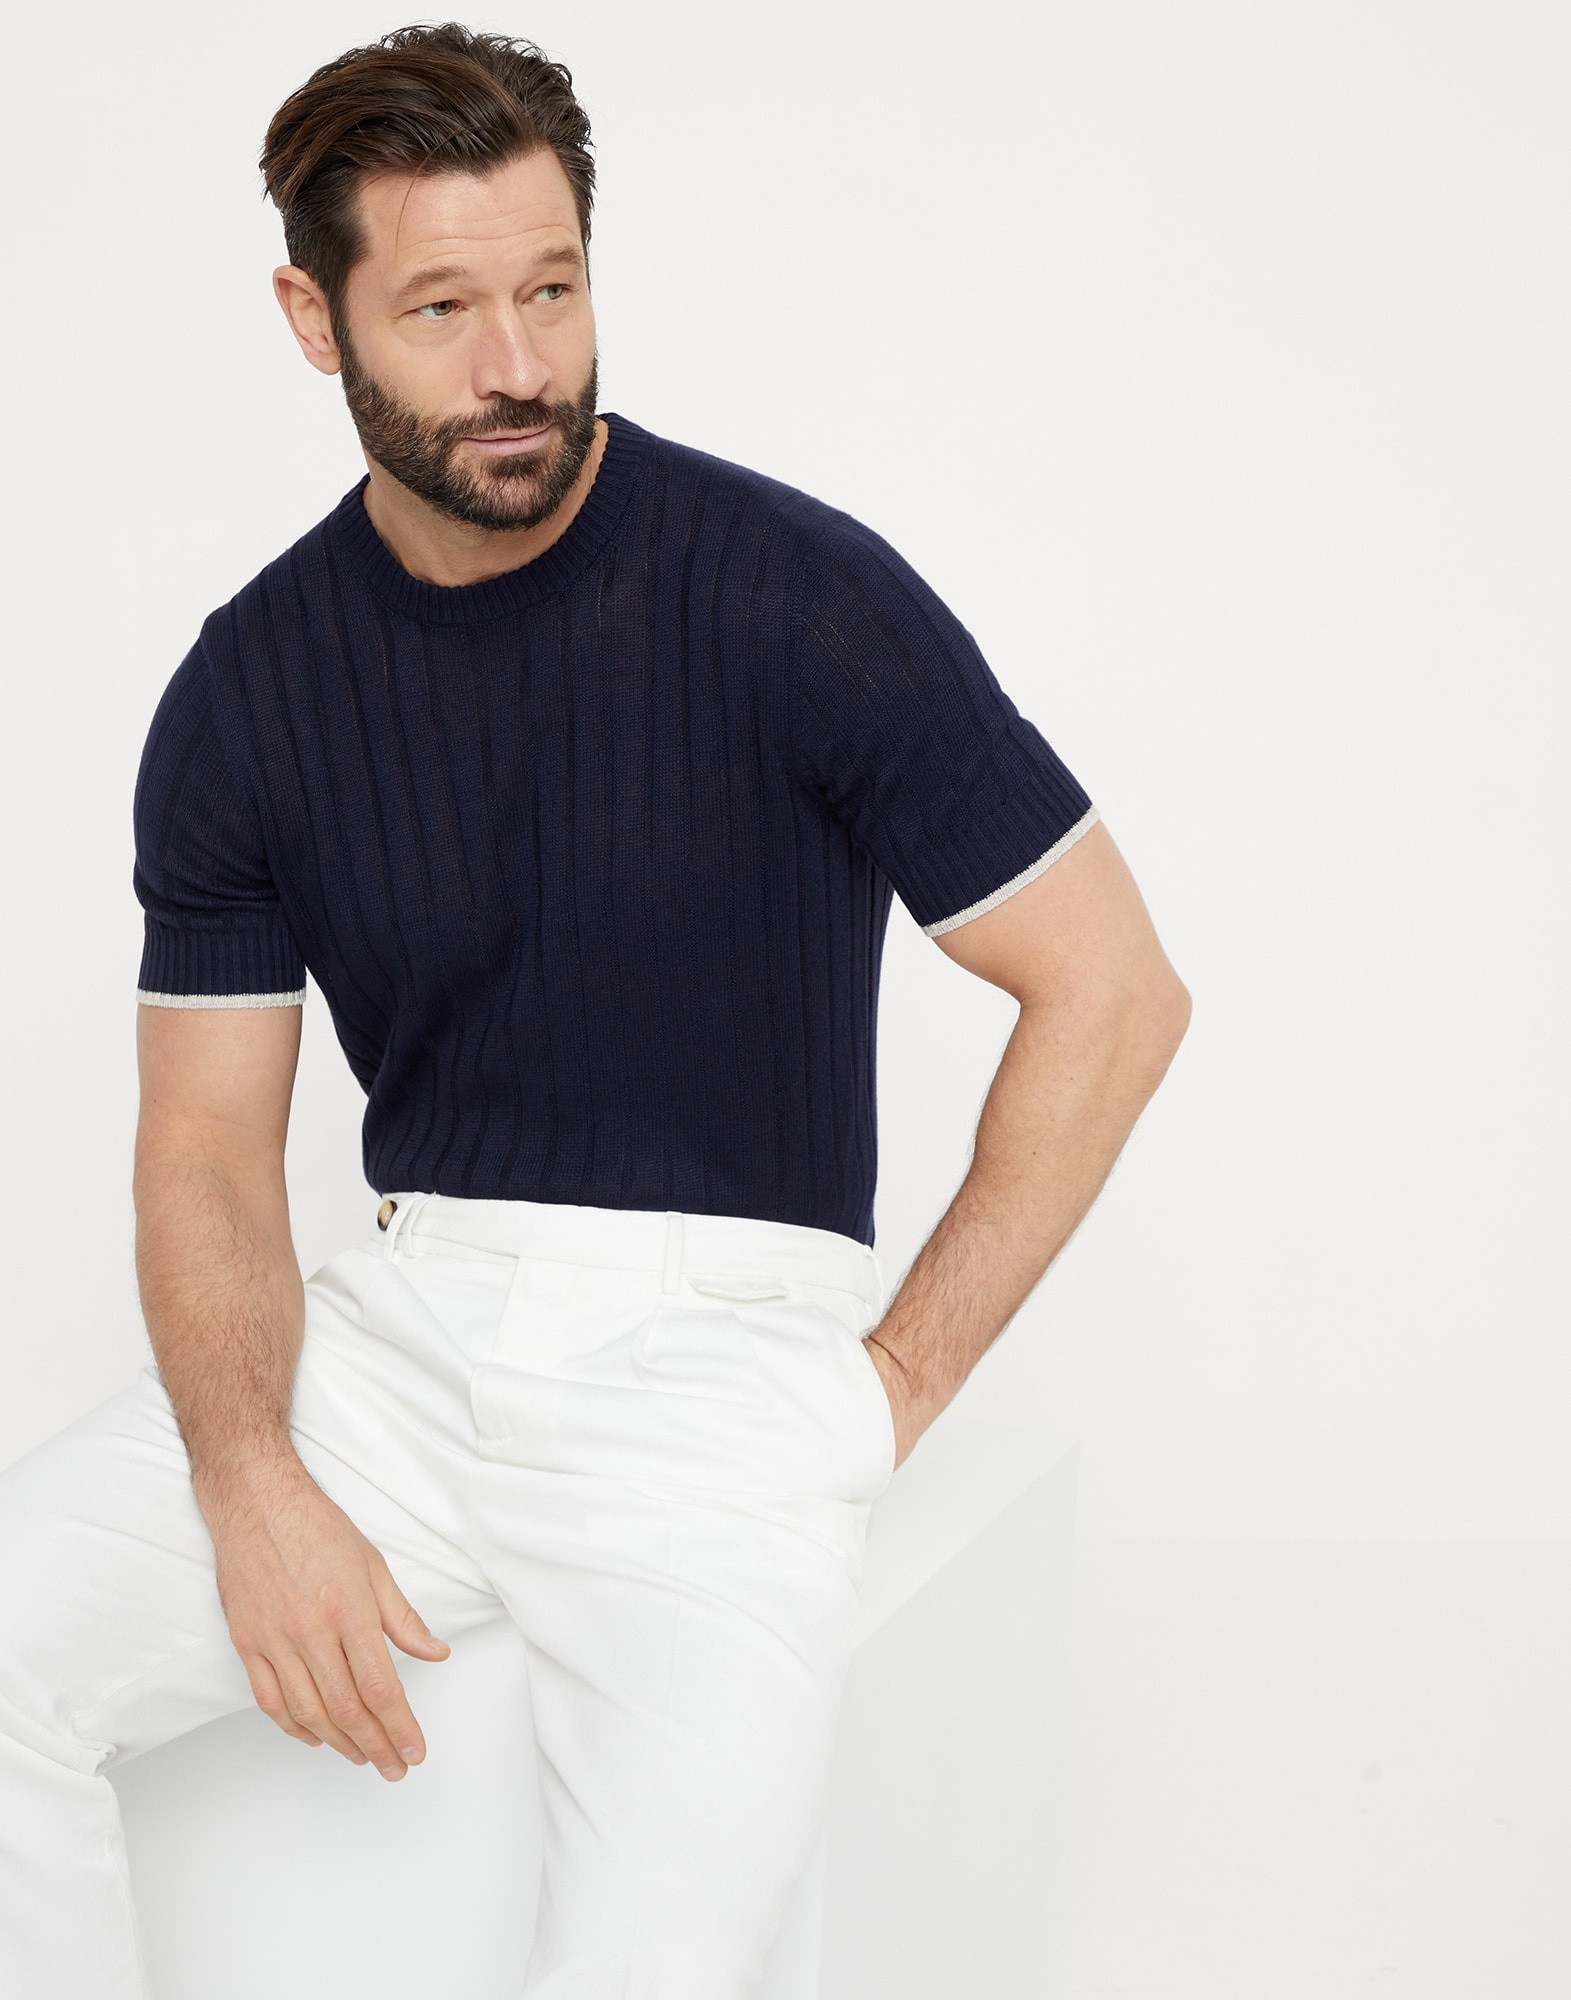 Linen and cotton flat rib knit T-shirt - 4